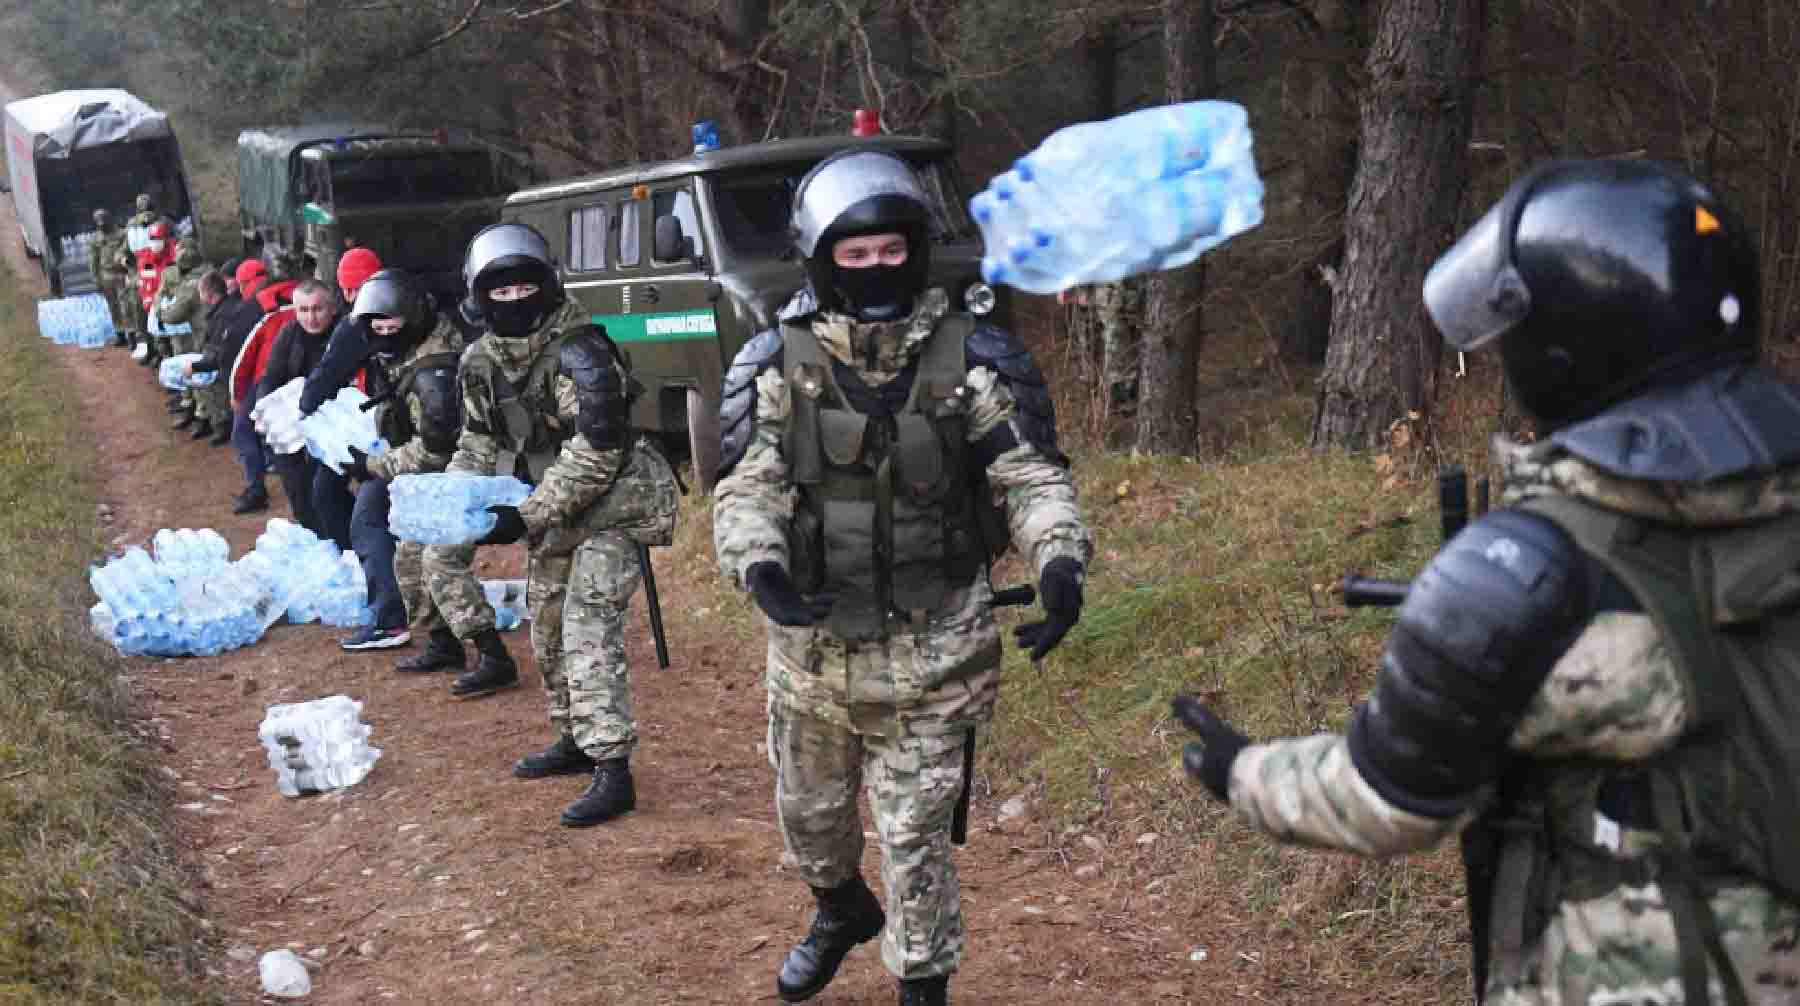 Сотрудники правоохранительных органов Белоруссии помогают разгружать воду, доставленную волонтерами, в лагере нелегальных мигрантов.